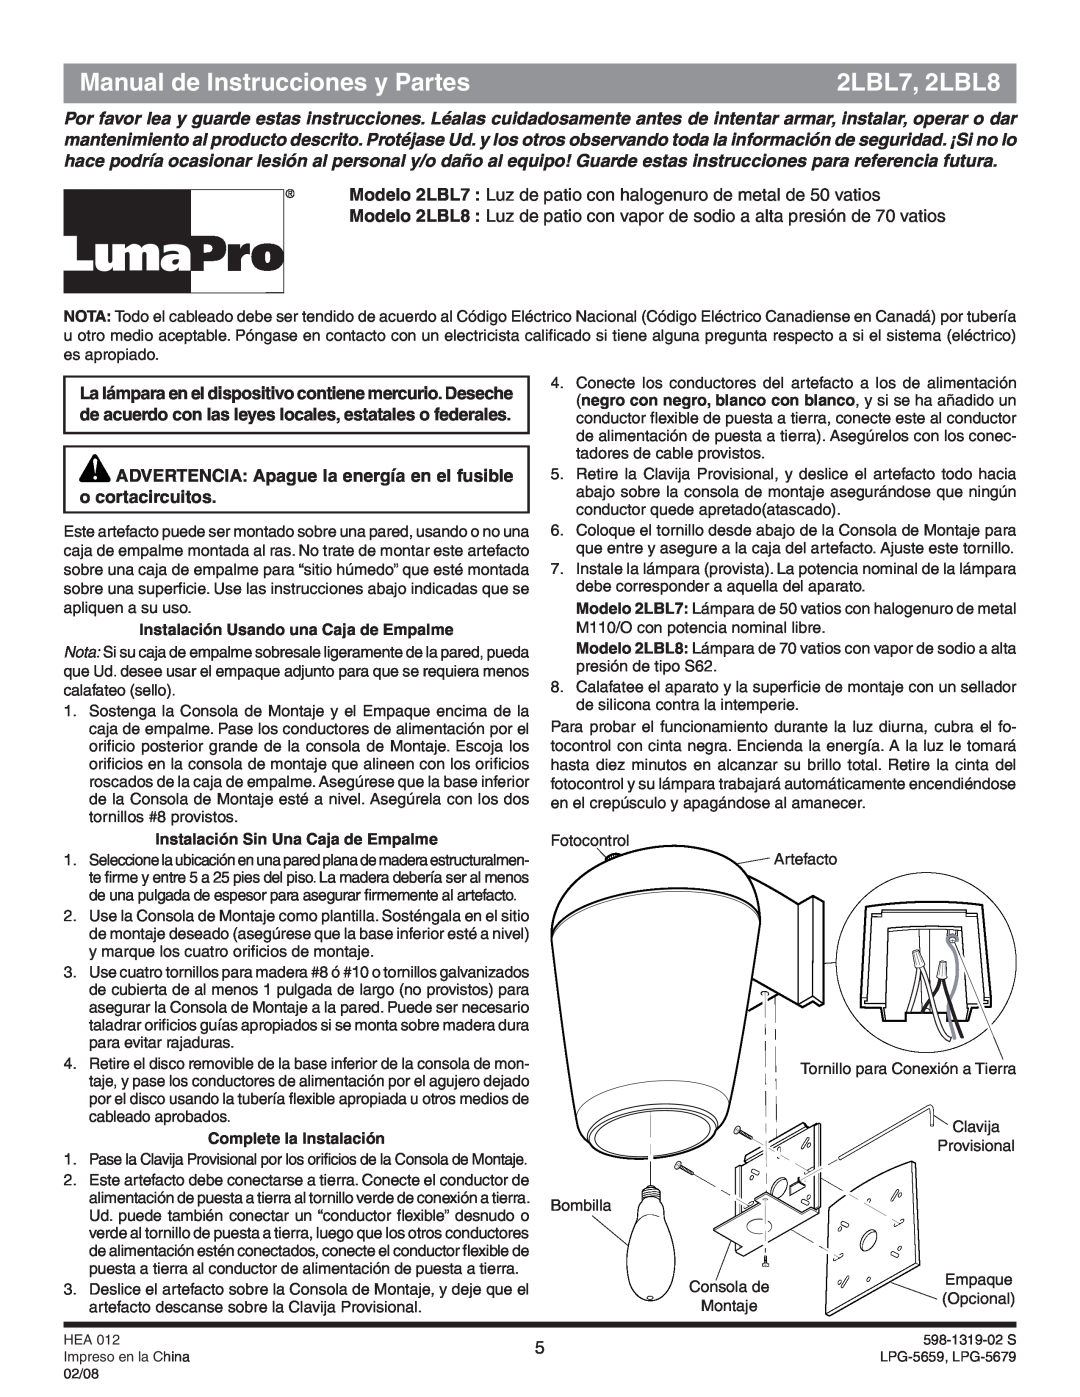 Heath Zenith manual Manual de Instrucciones y Partes, 2LBL7, 2LBL8, Instalación Usando una Caja de Empalme 